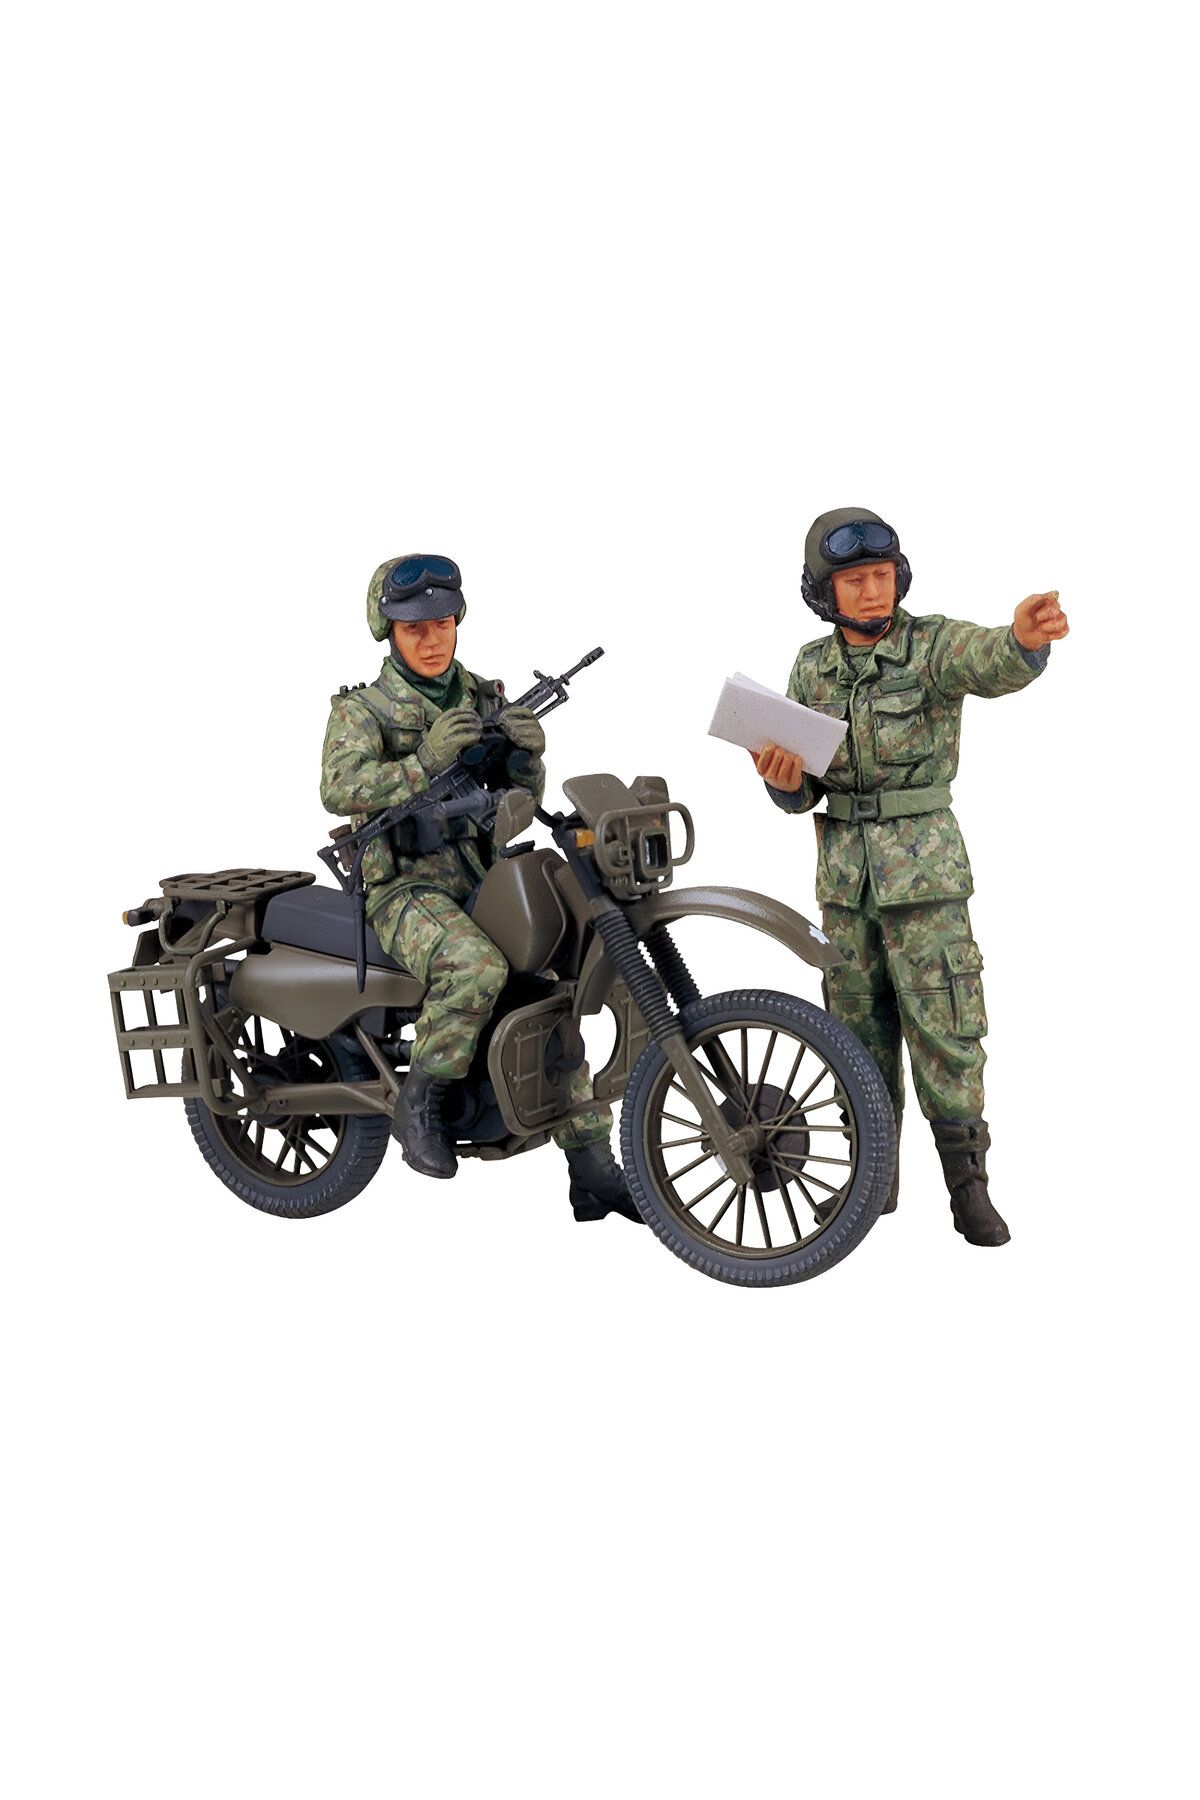 TAMIYA 1/35 Jgsdf Motorcycle Reconnaissance Set Plastik Askeri Motosiklet Maket Kiti, Demonte Hobi Seti